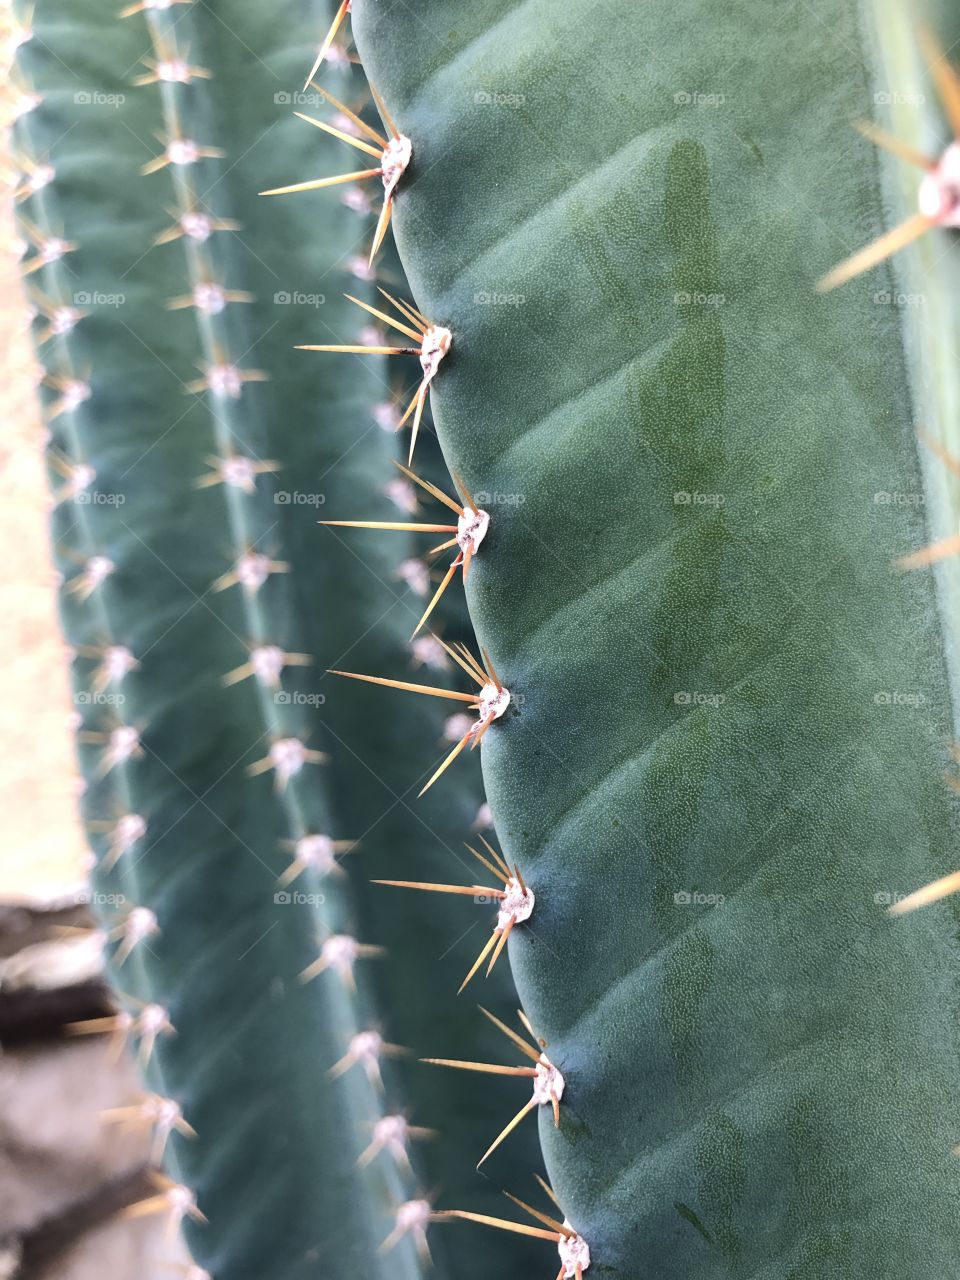 True portrait cactus